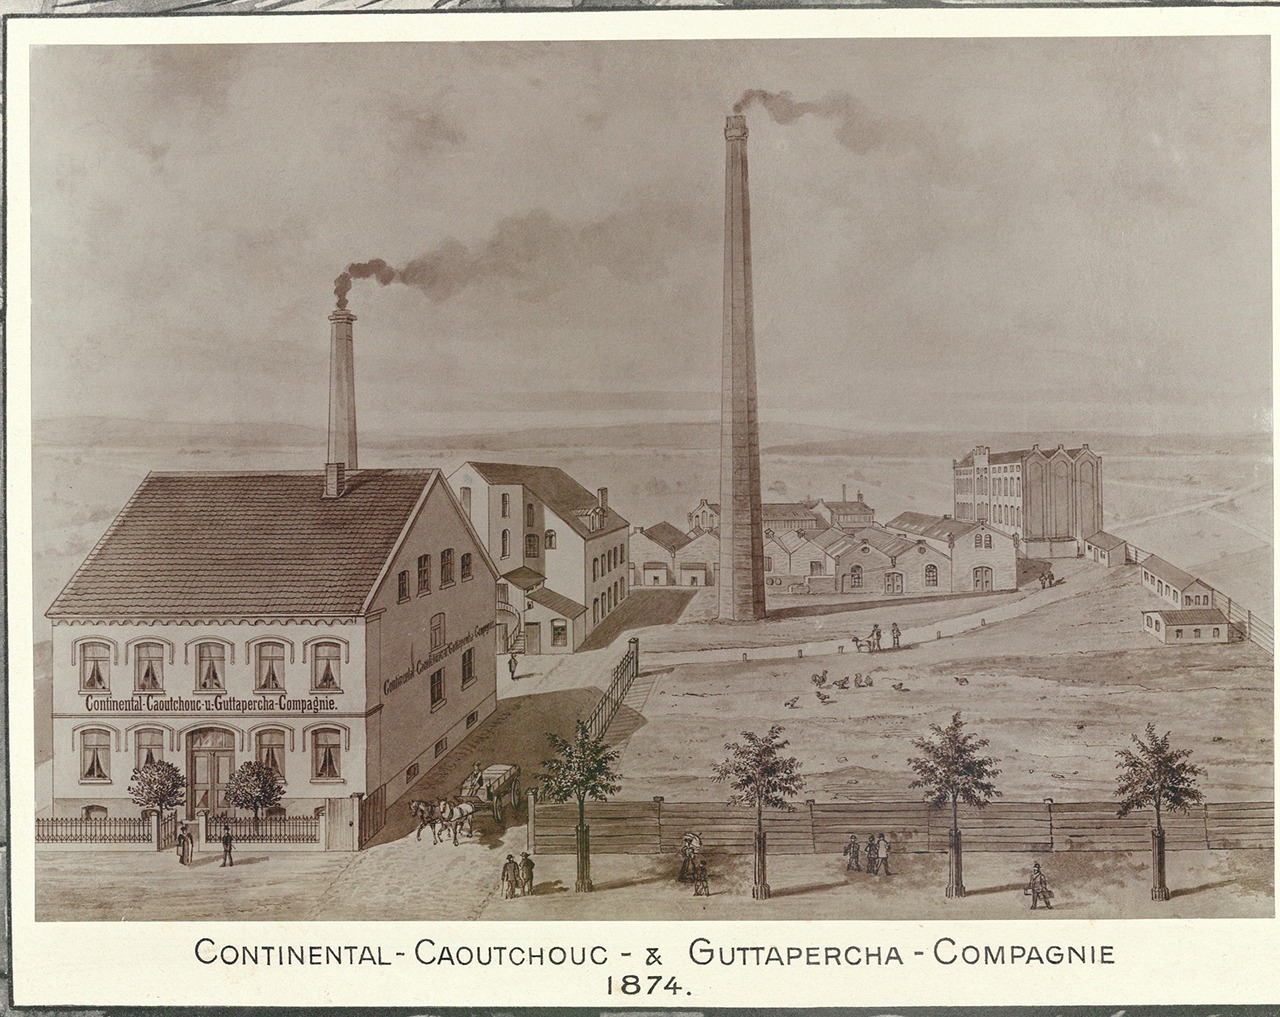 Continental Caoutchouc& Gutta-Percha Company